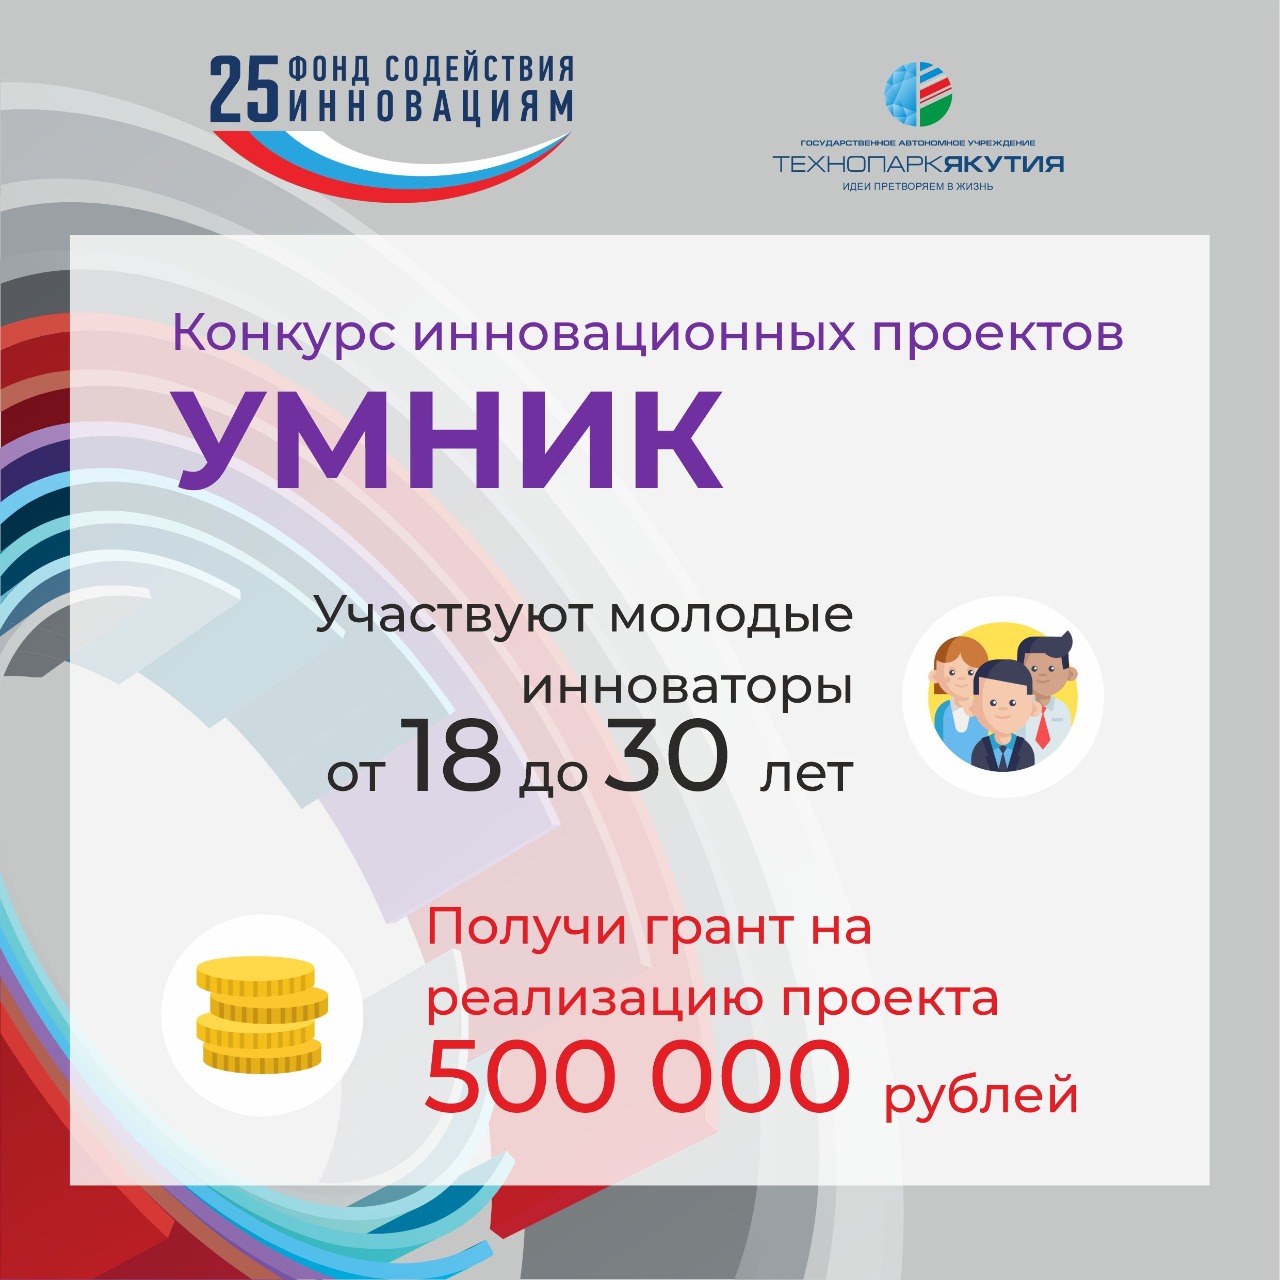 В Якутии продолжается прием заявок на участие в конкурсе «УМНИК-2019»